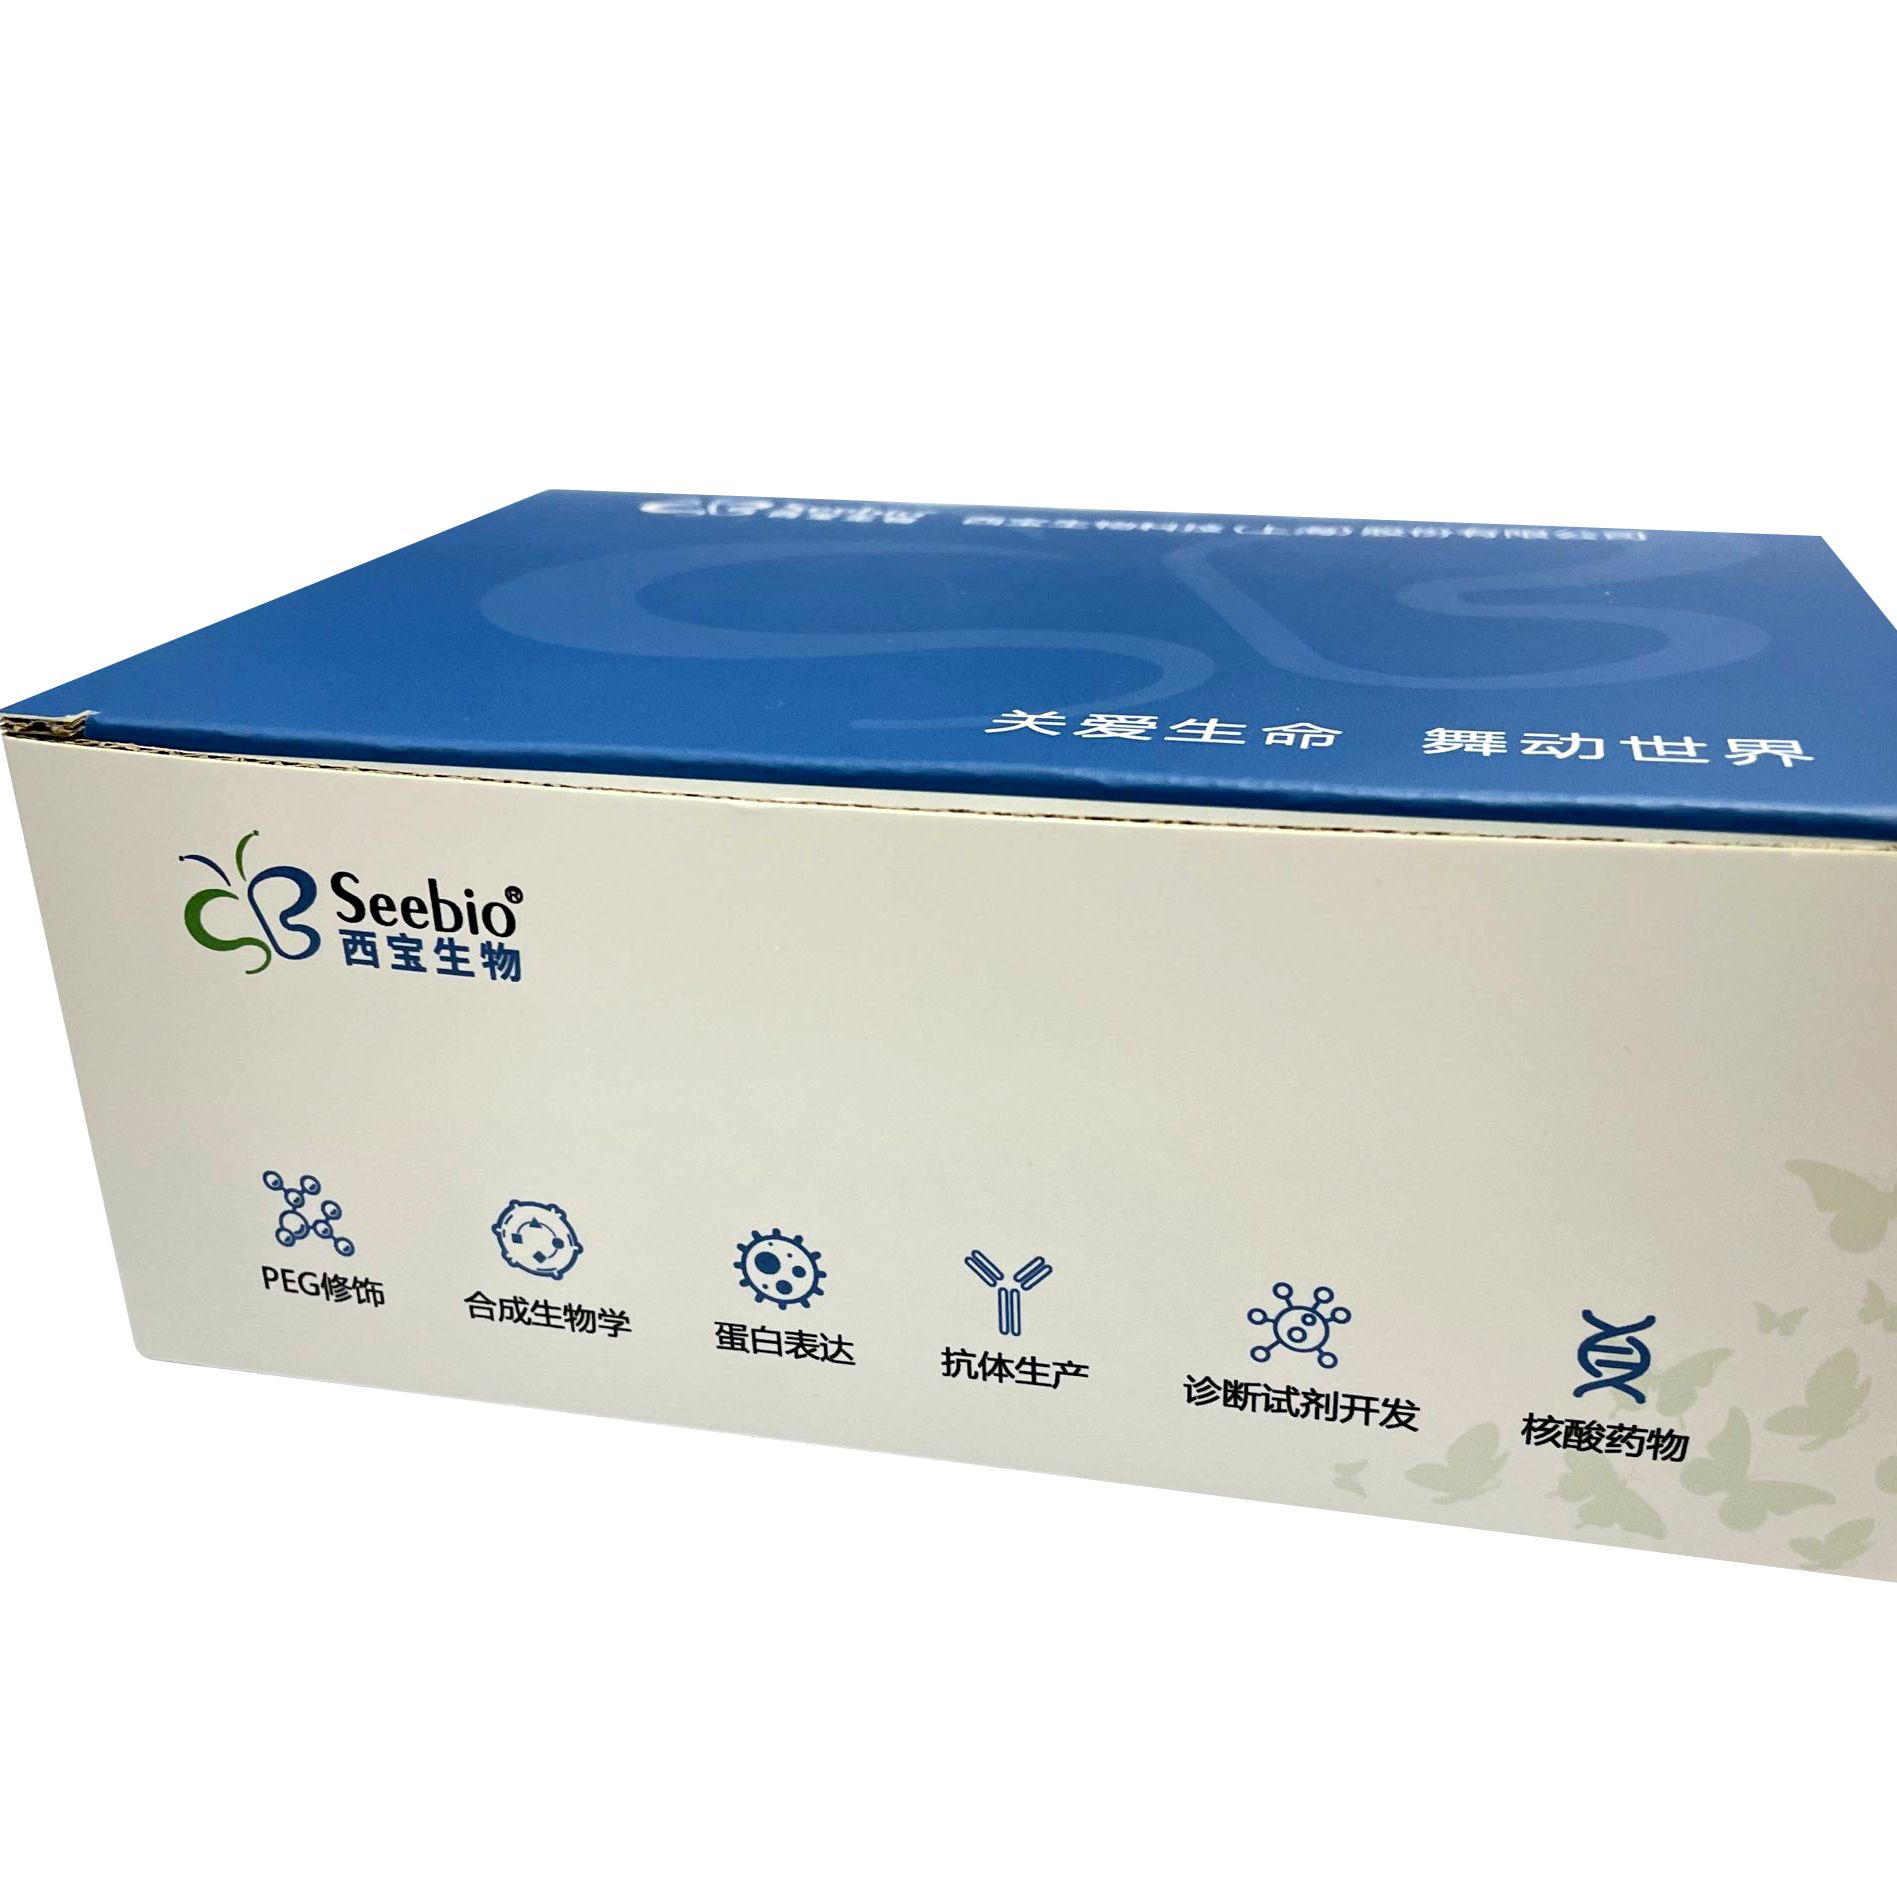 Seebio® 碱性磷酸酶活性检测试剂盒；Seebio®  Alkaline phosphatase activity assay kit; 9001-78-9